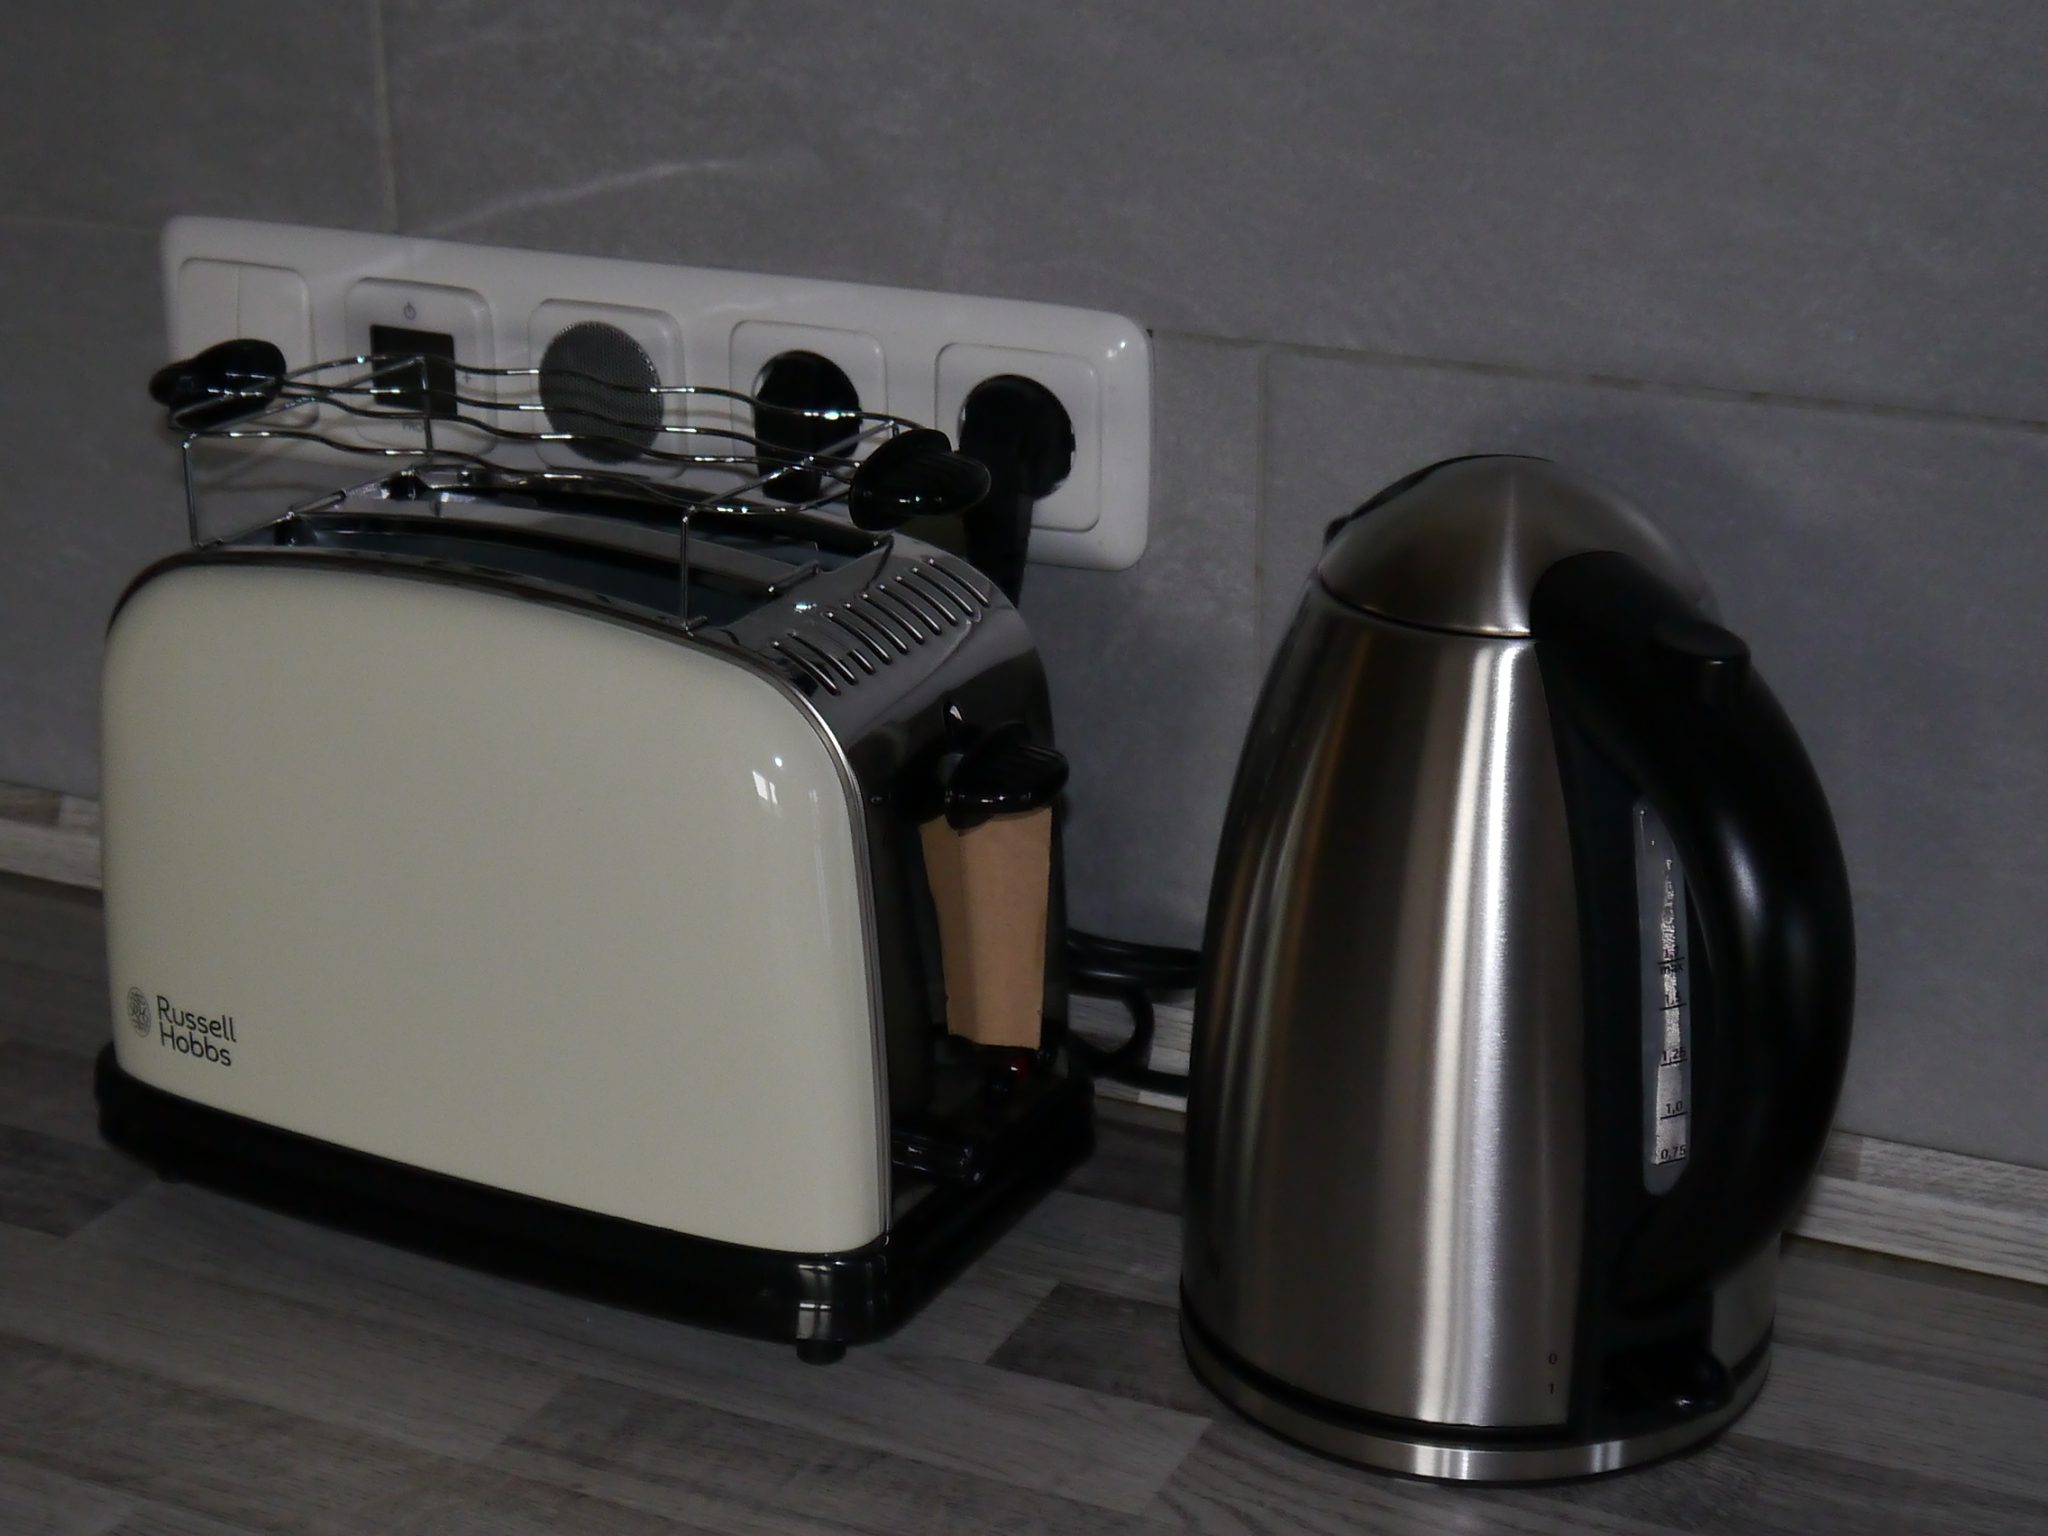 Wasserkocher und Toaster